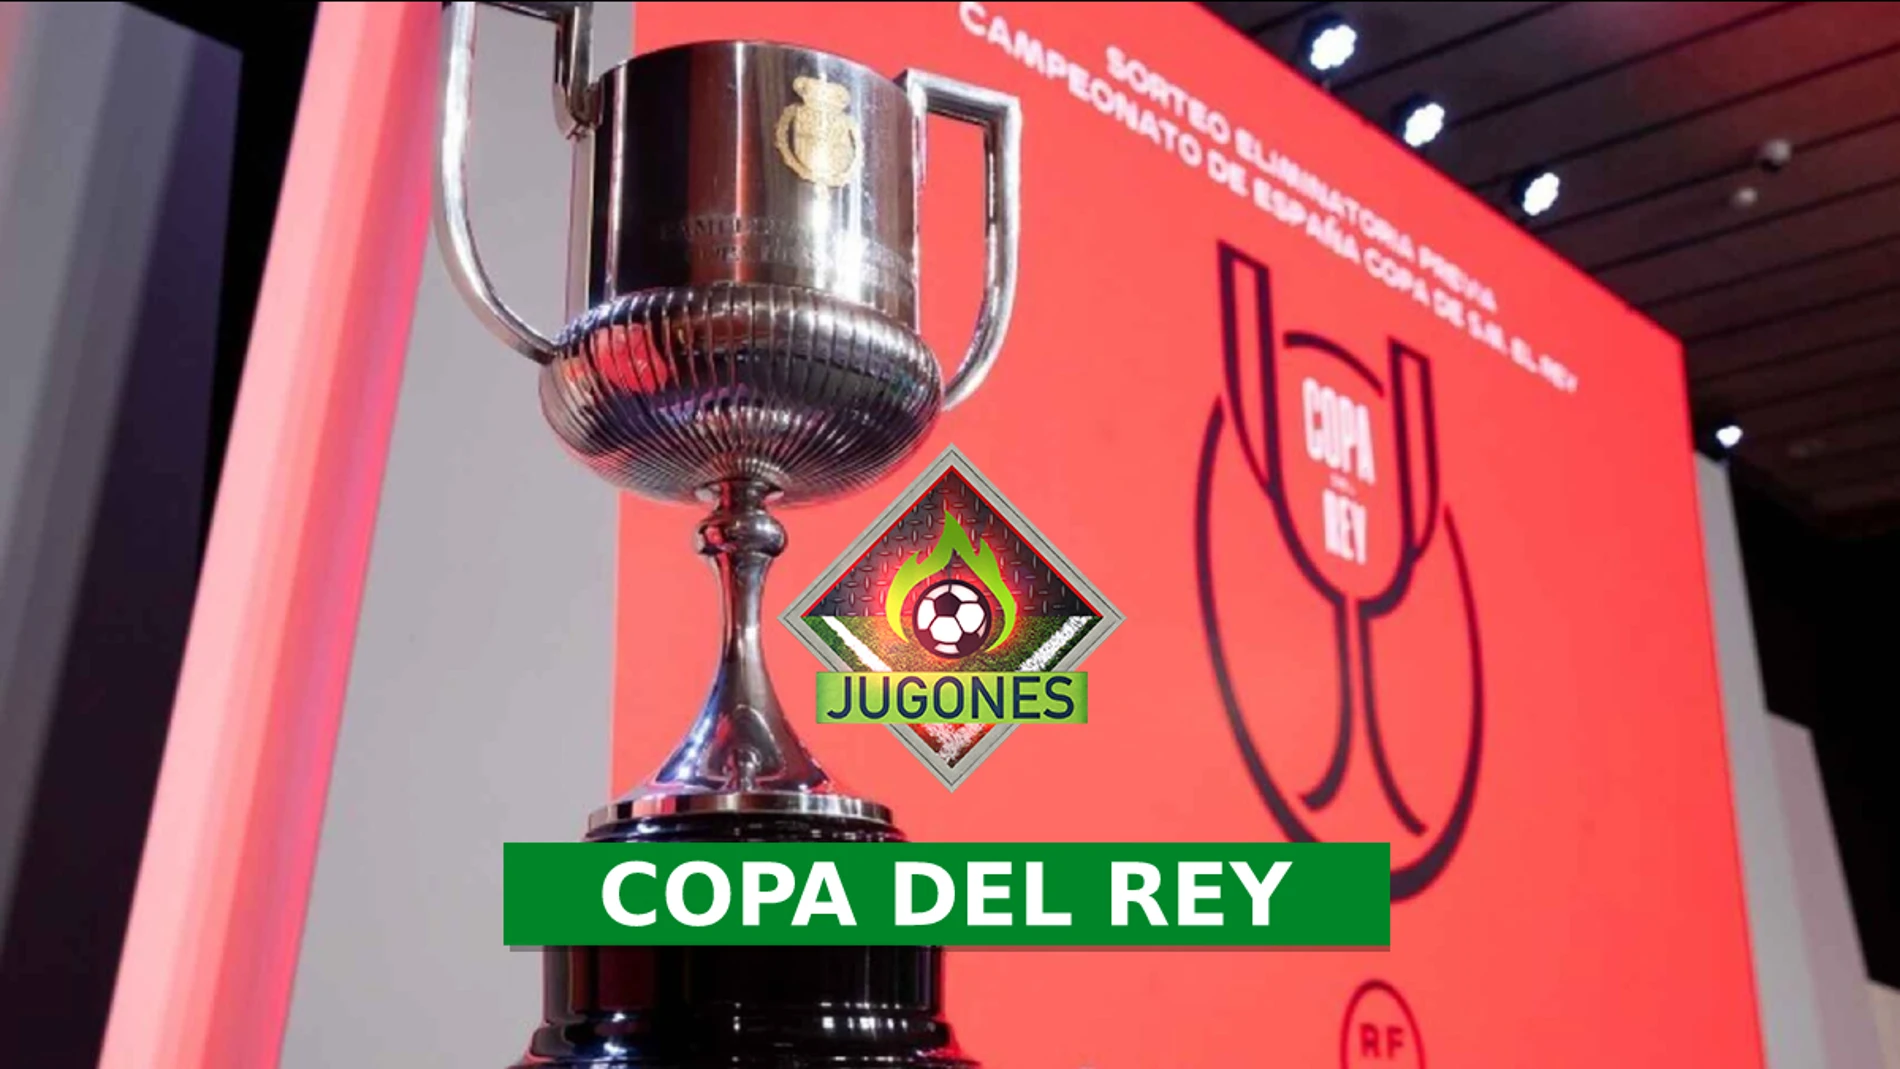 Copa del Rey: Sorteo de las semifinales